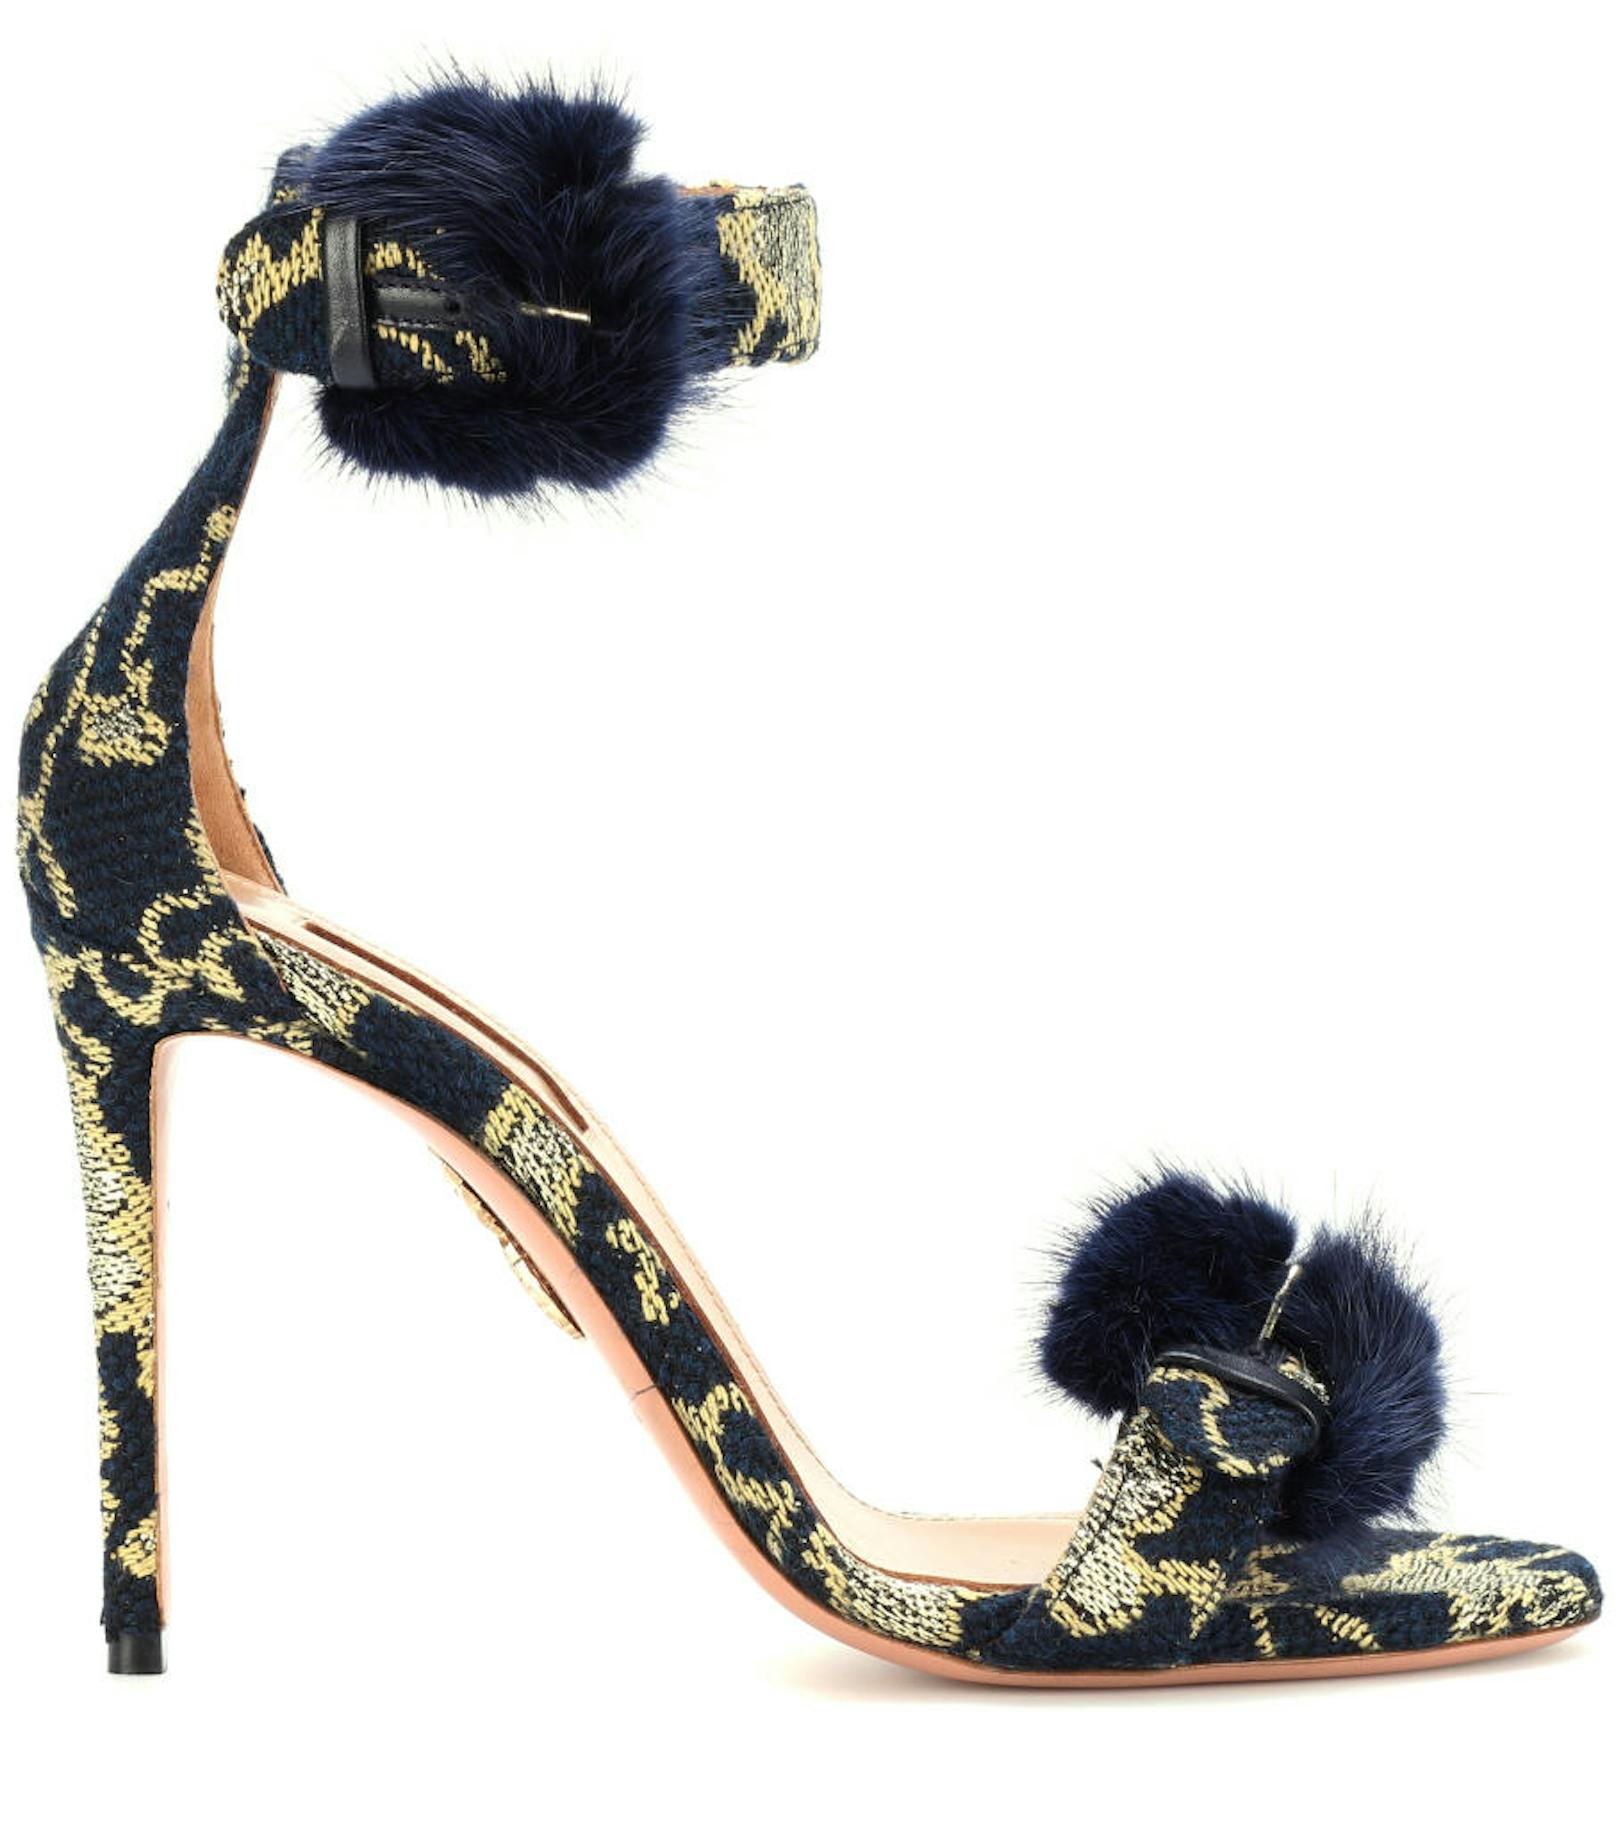 Die Schuhe aus der "Woman in Gold"-Kollektion von Designer Edgardo Osorio